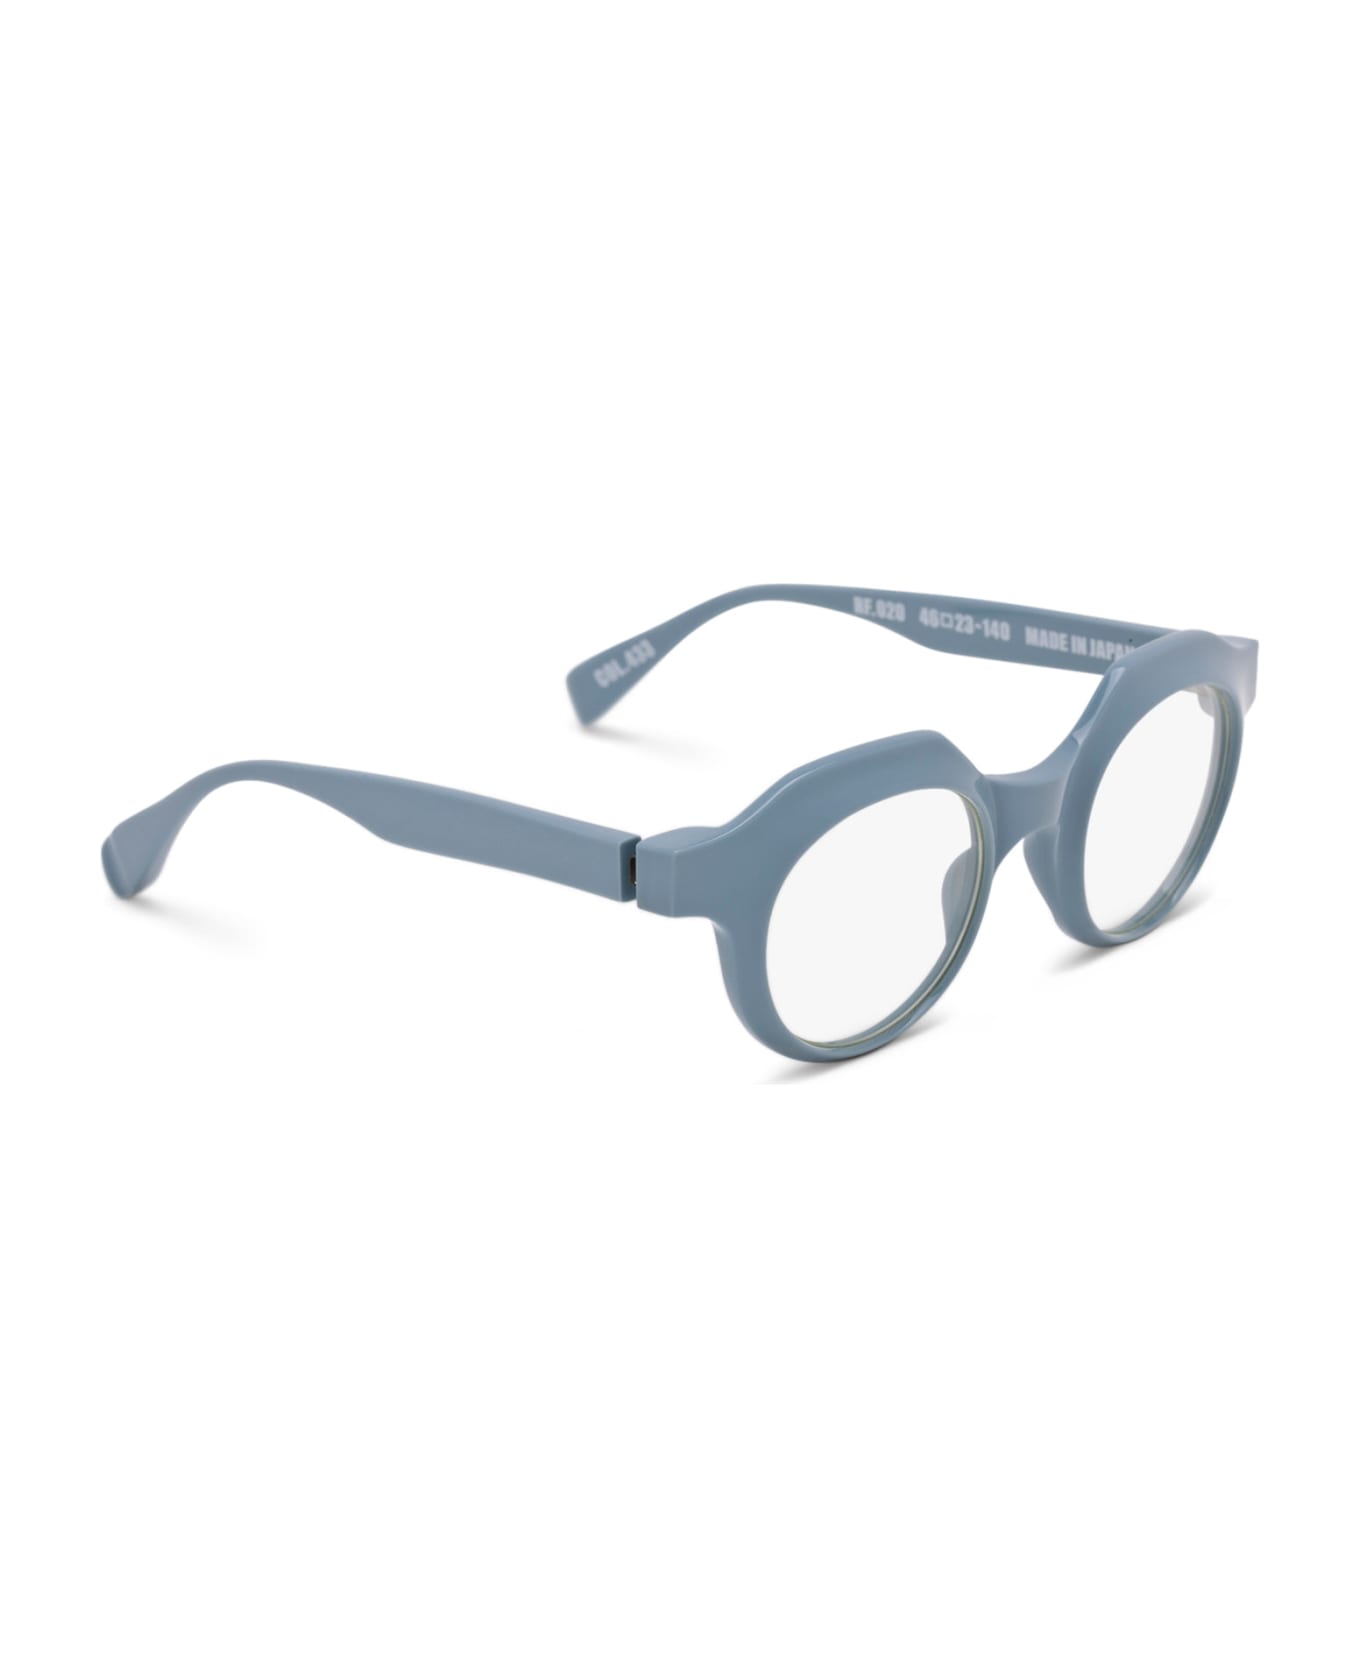 FACTORY900 Rf 020-433 Glasses - light blue アイウェア